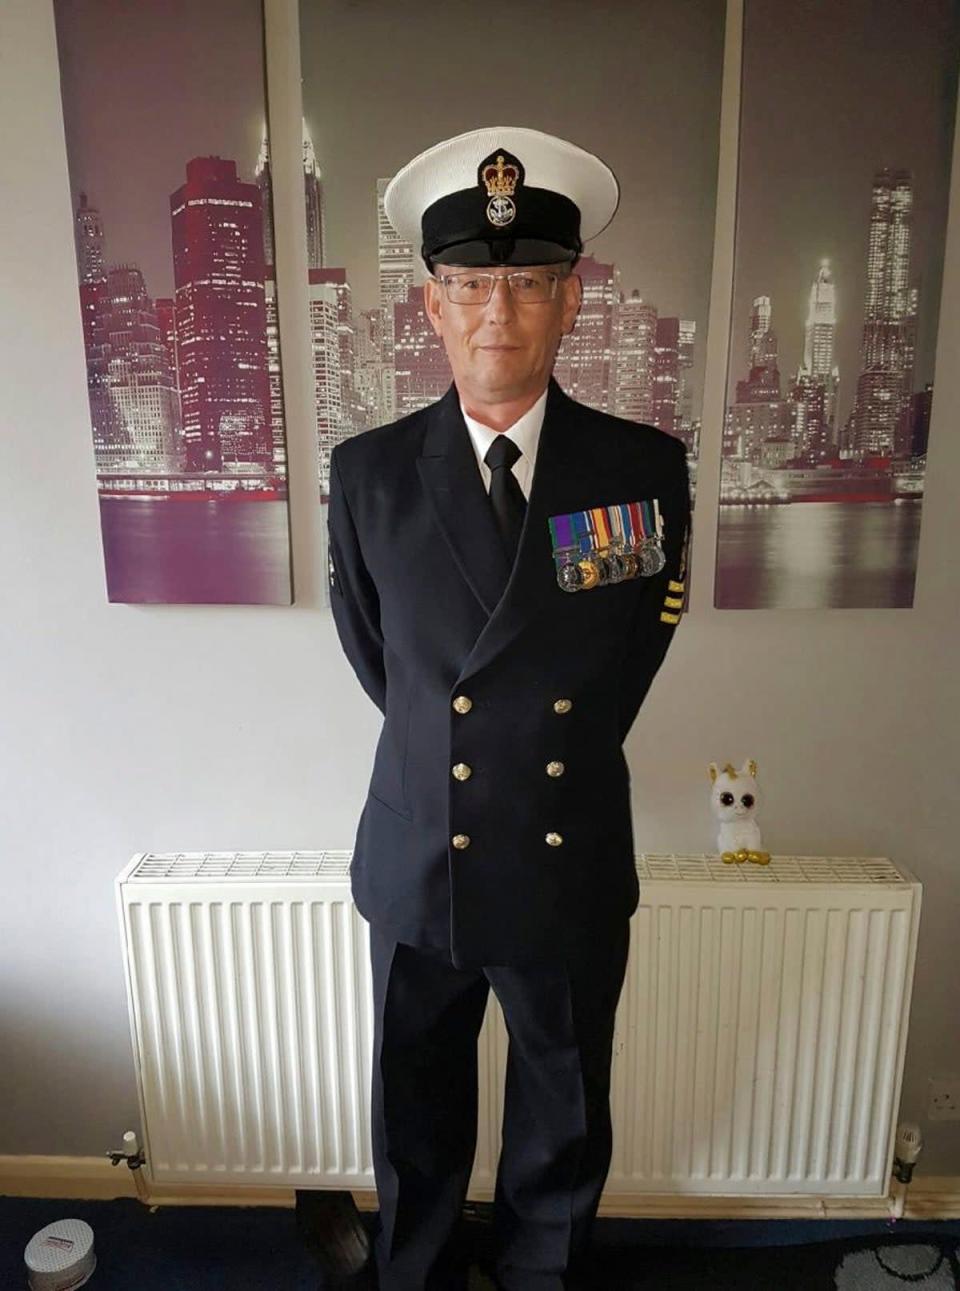 Nachdem er die Schule verlassen hatte, überraschte er seine Familie, indem er der Royal Navy beitrat, anstatt wie erwartet zur Universität zu gehen.  (Familien-/Solent-News)